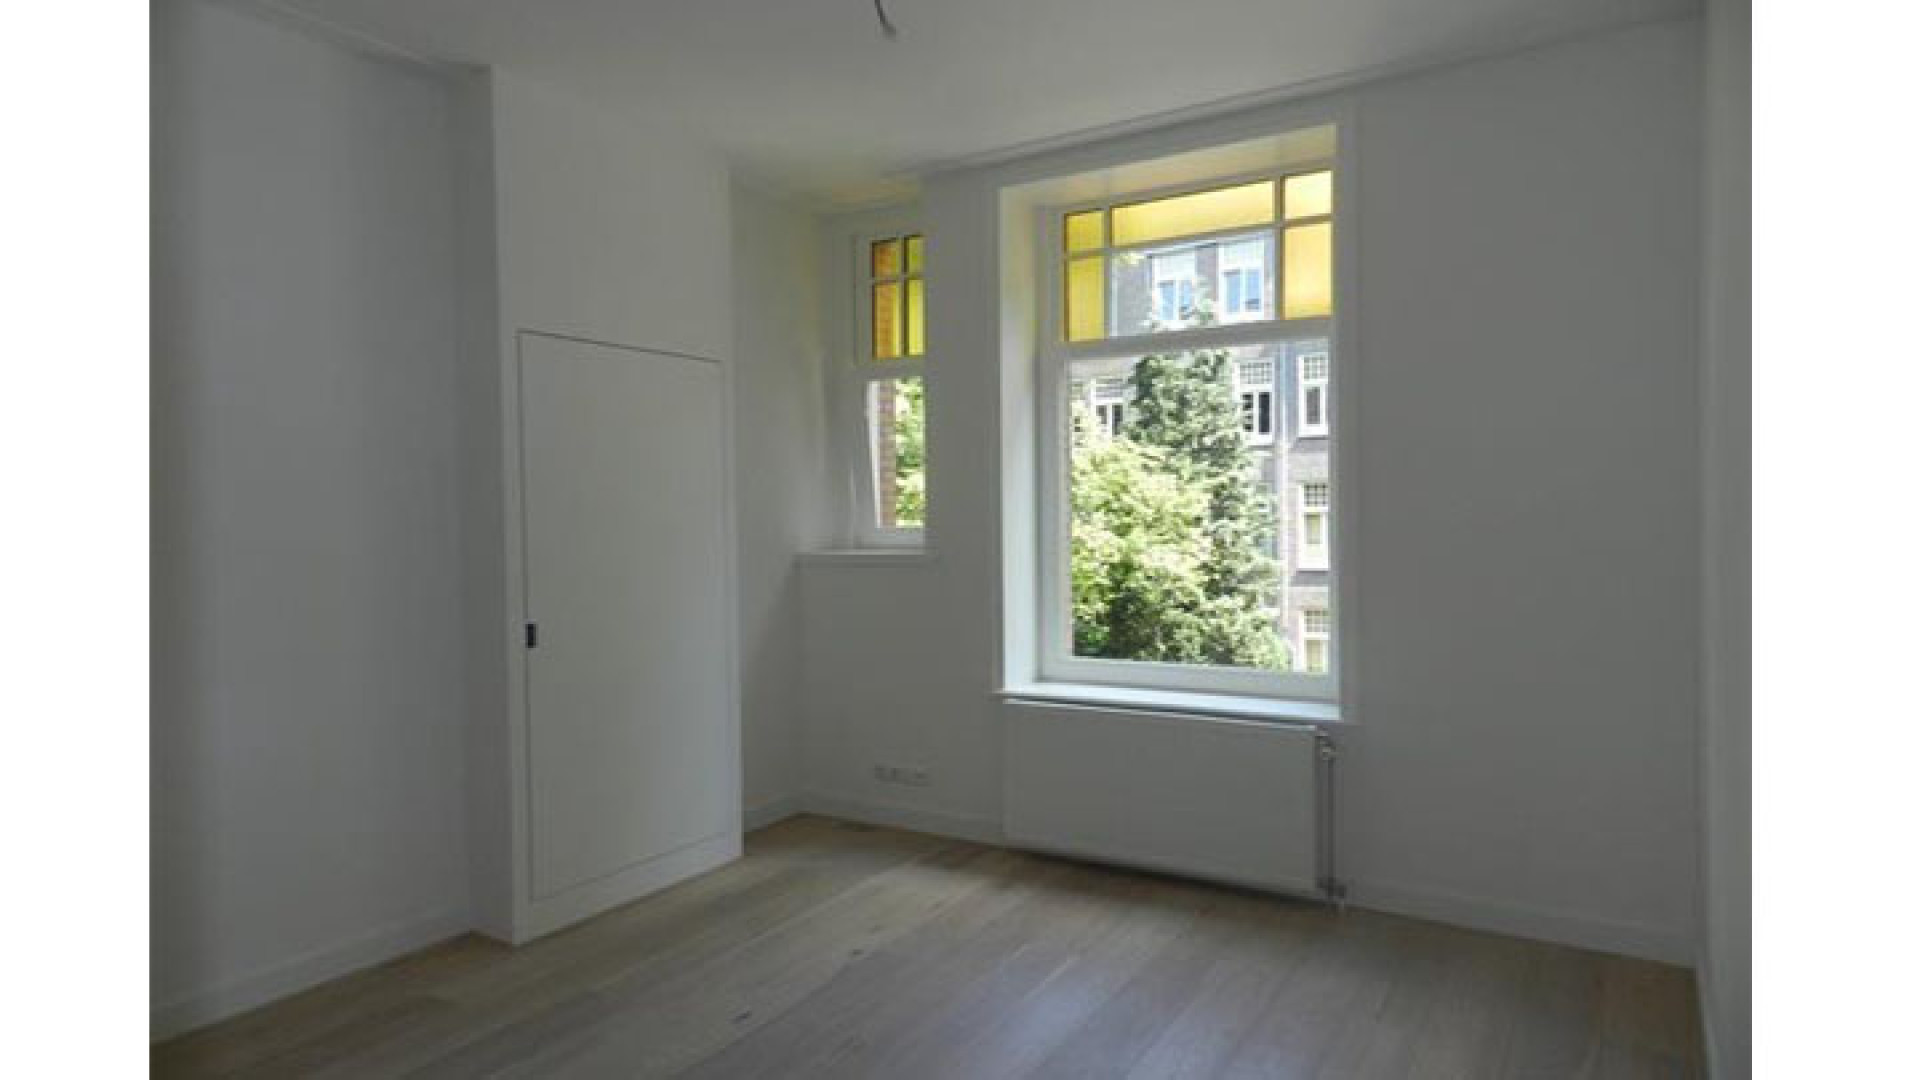 Marvin Breukhoven ruilt Haags optrekje in voor appartement in Amsterdam Oud Zuid. Zie foto's 6